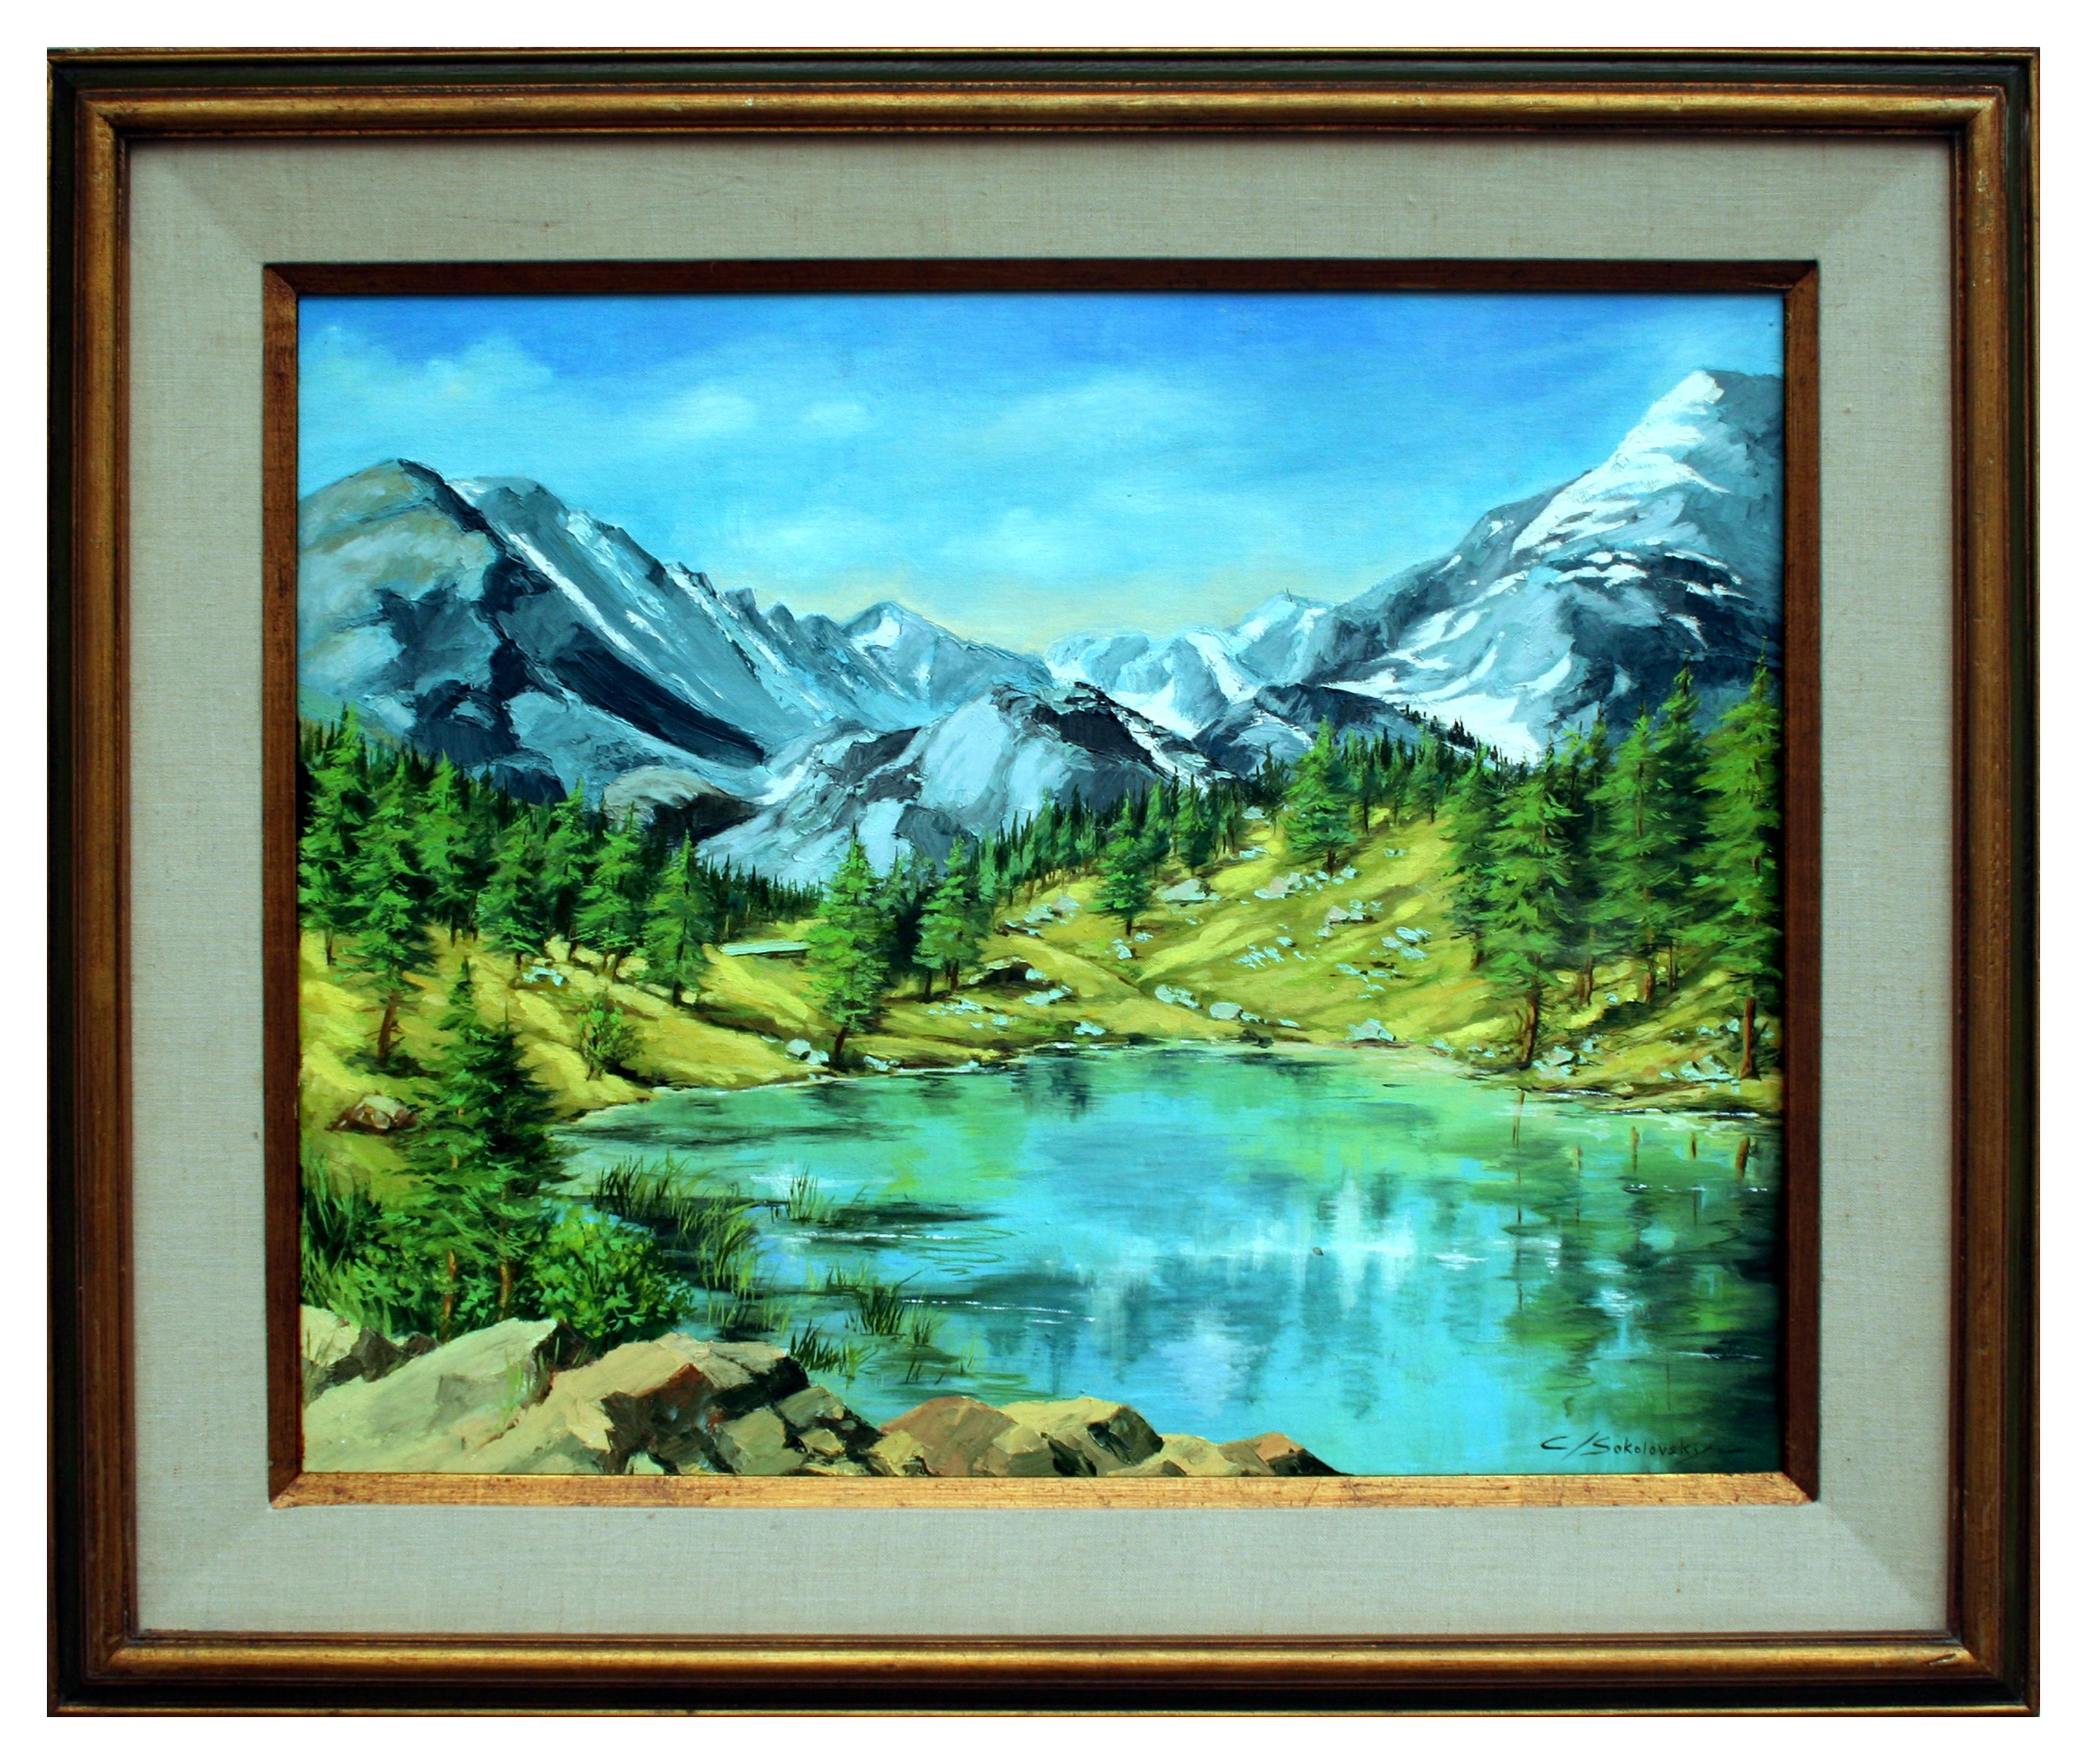 C. Sokolovsky Landscape Painting - Serene Sierra Mountain Lake Landscape